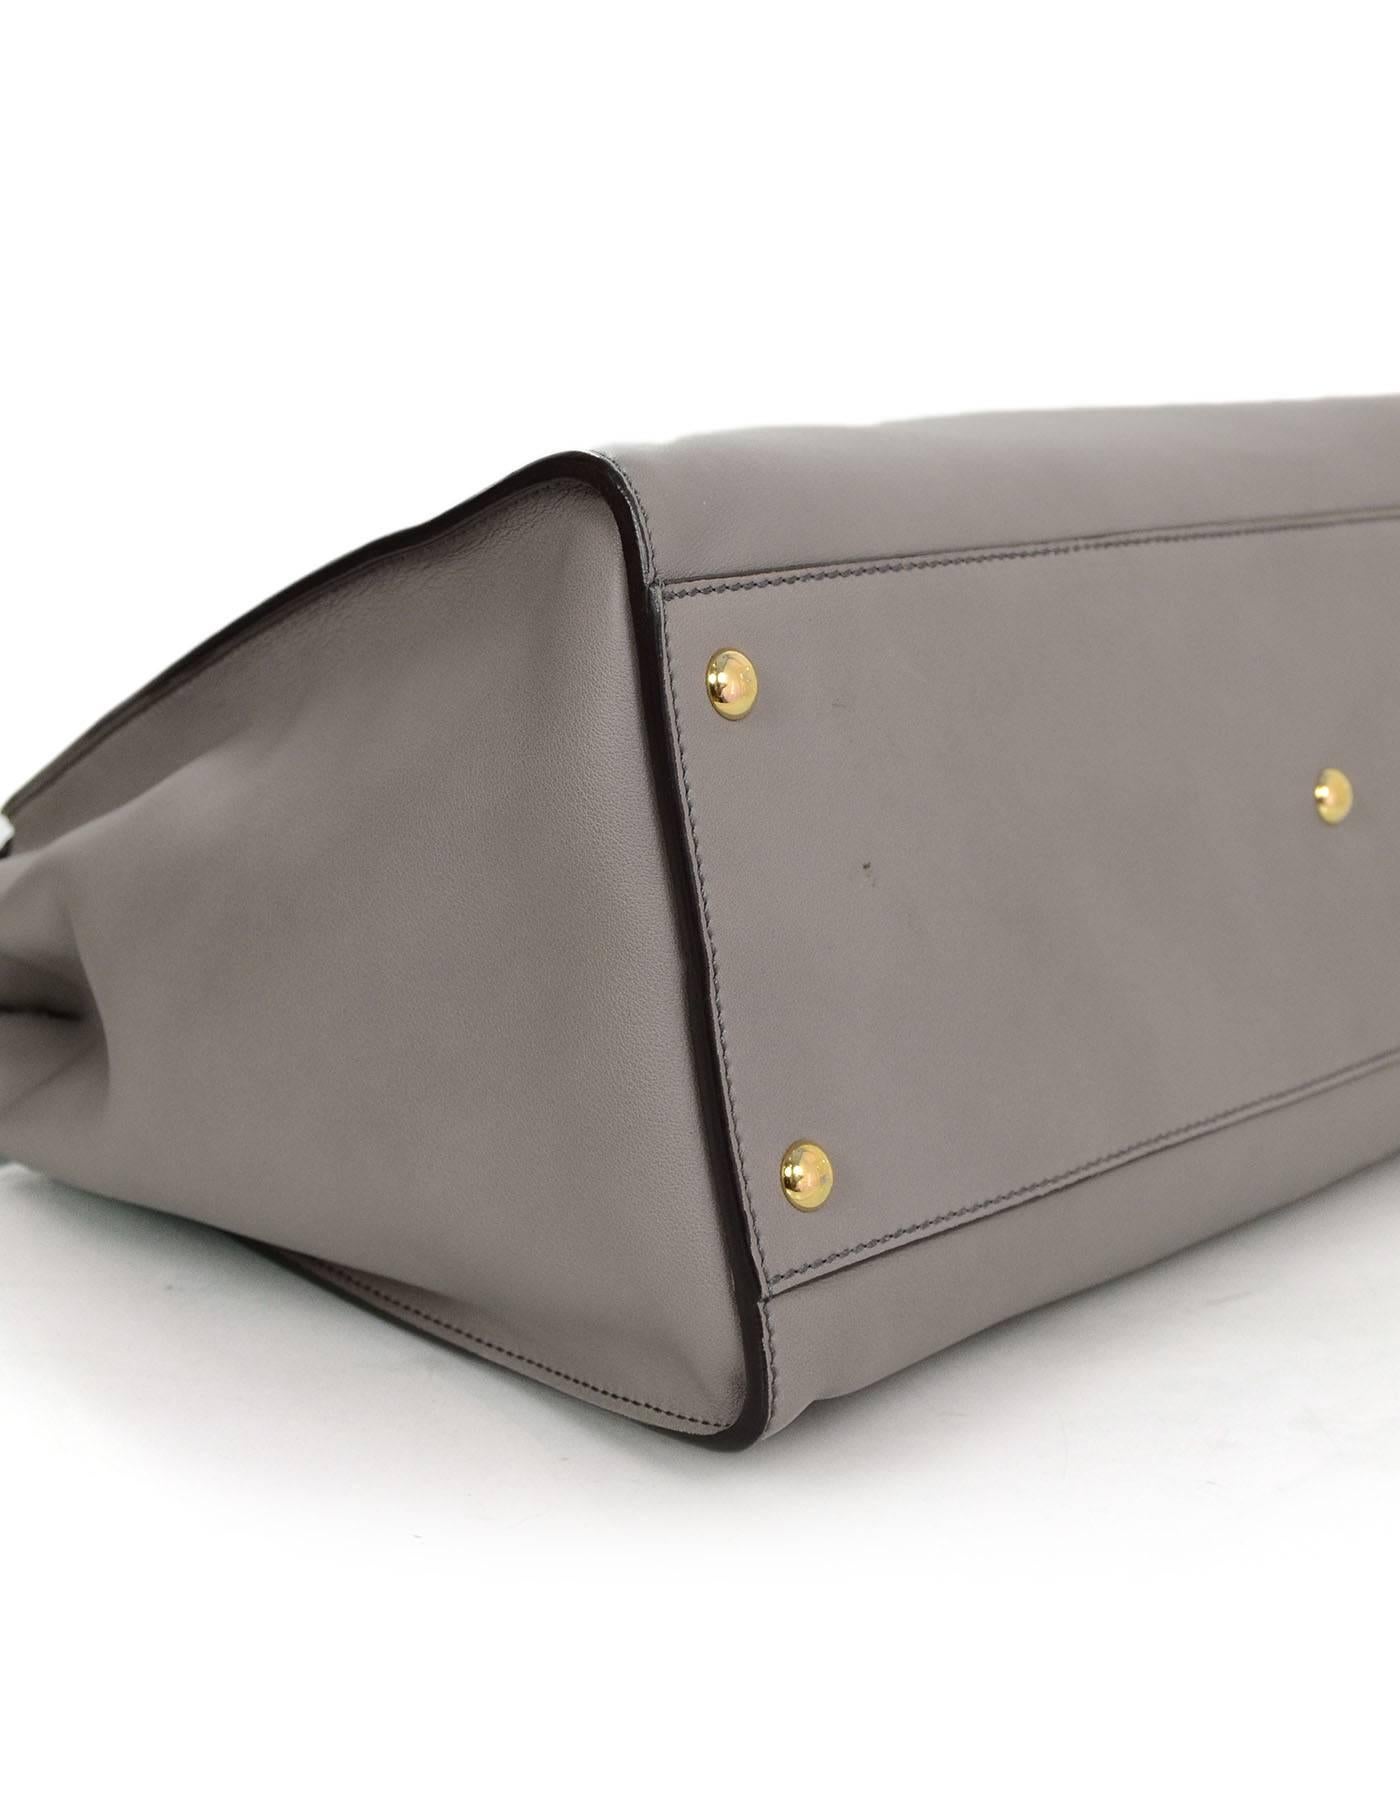 grey satchel bag